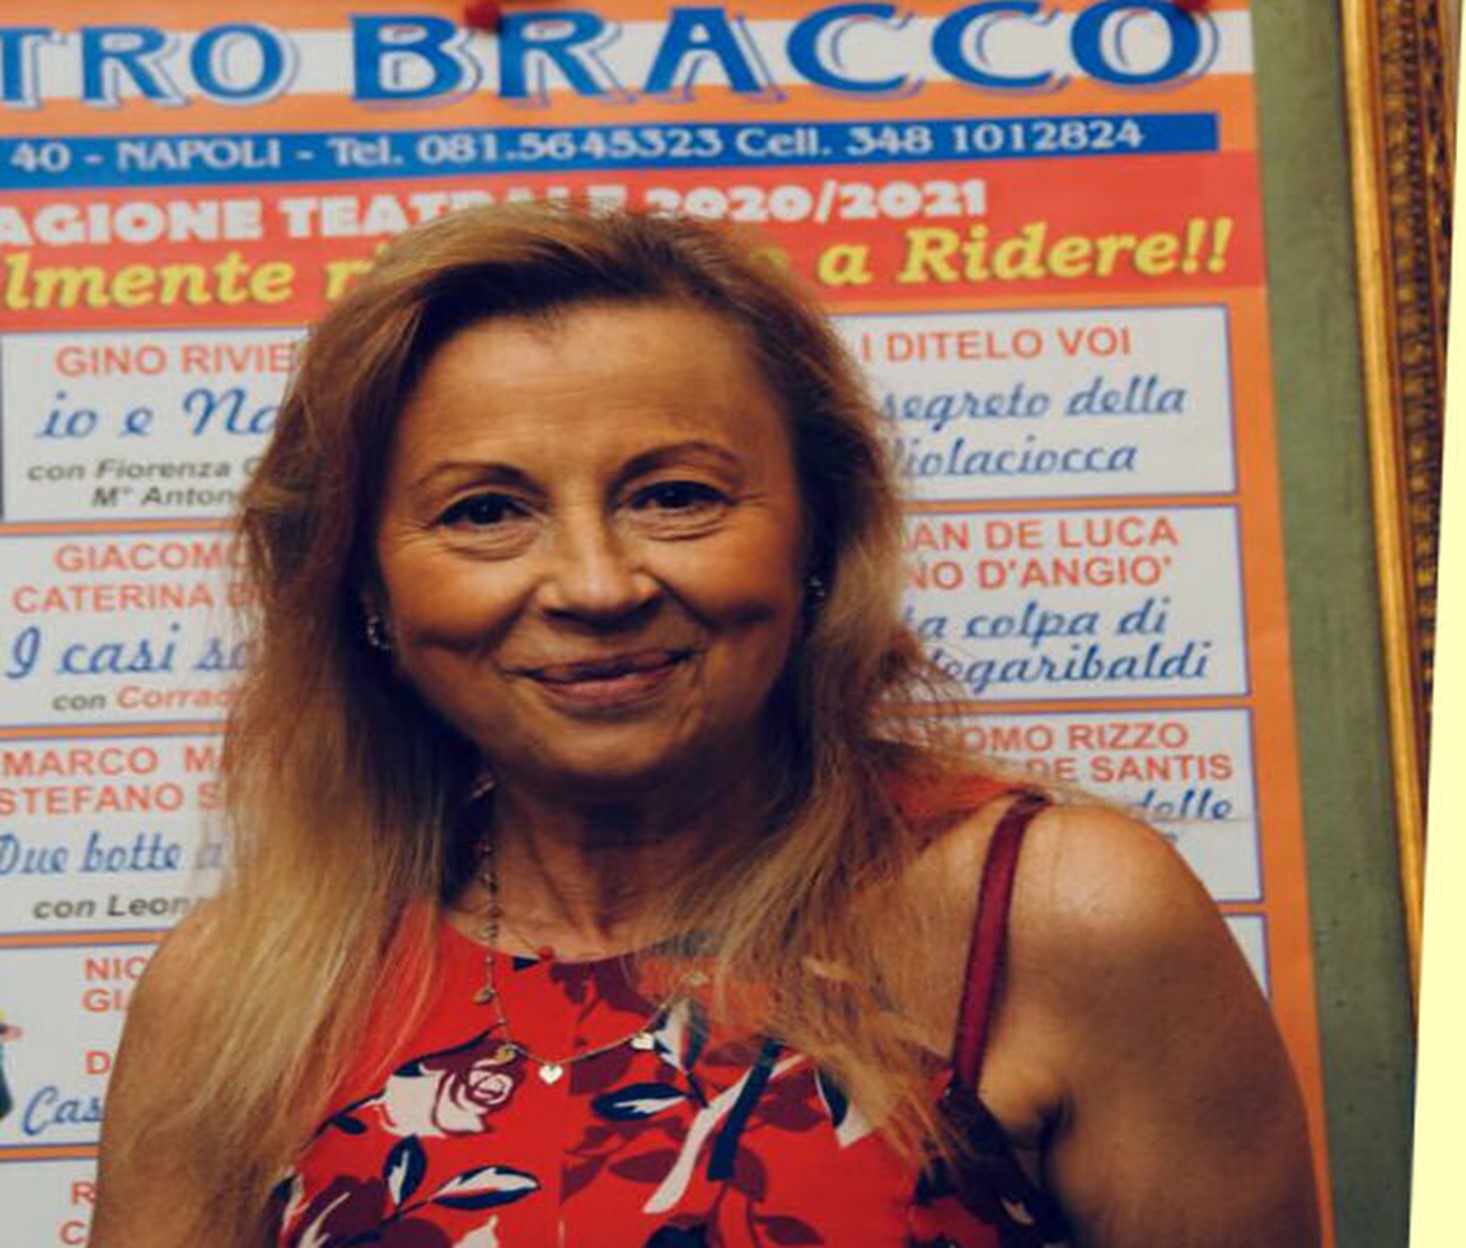  Teatro Bracco, ecco il cartellone della 24esima stagione Caterina De Santis: “Da ottobre torniamo a ridere insieme”